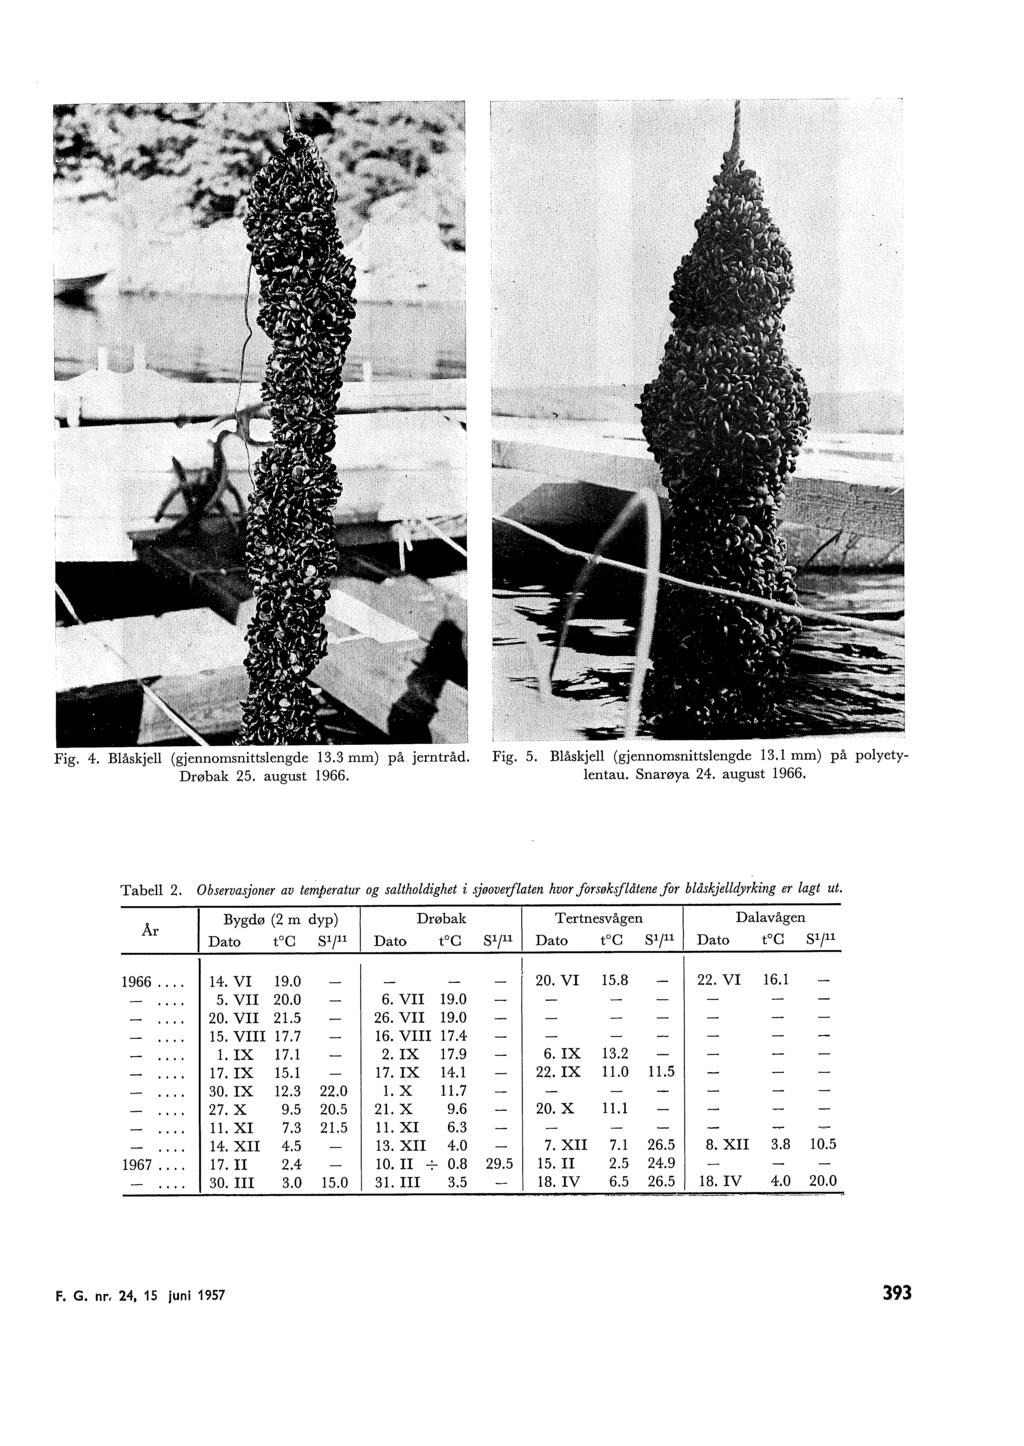 Fig. 4. Båskje (gjennomsnittsengde 13.3 mm) på jerntråd. Drøbak 5. august 1966. Fig. 5. Båskje (gjennomsnittsengde 13.1 mm) på poyetyentau. Snarøya 4. august 1966. Tabe.